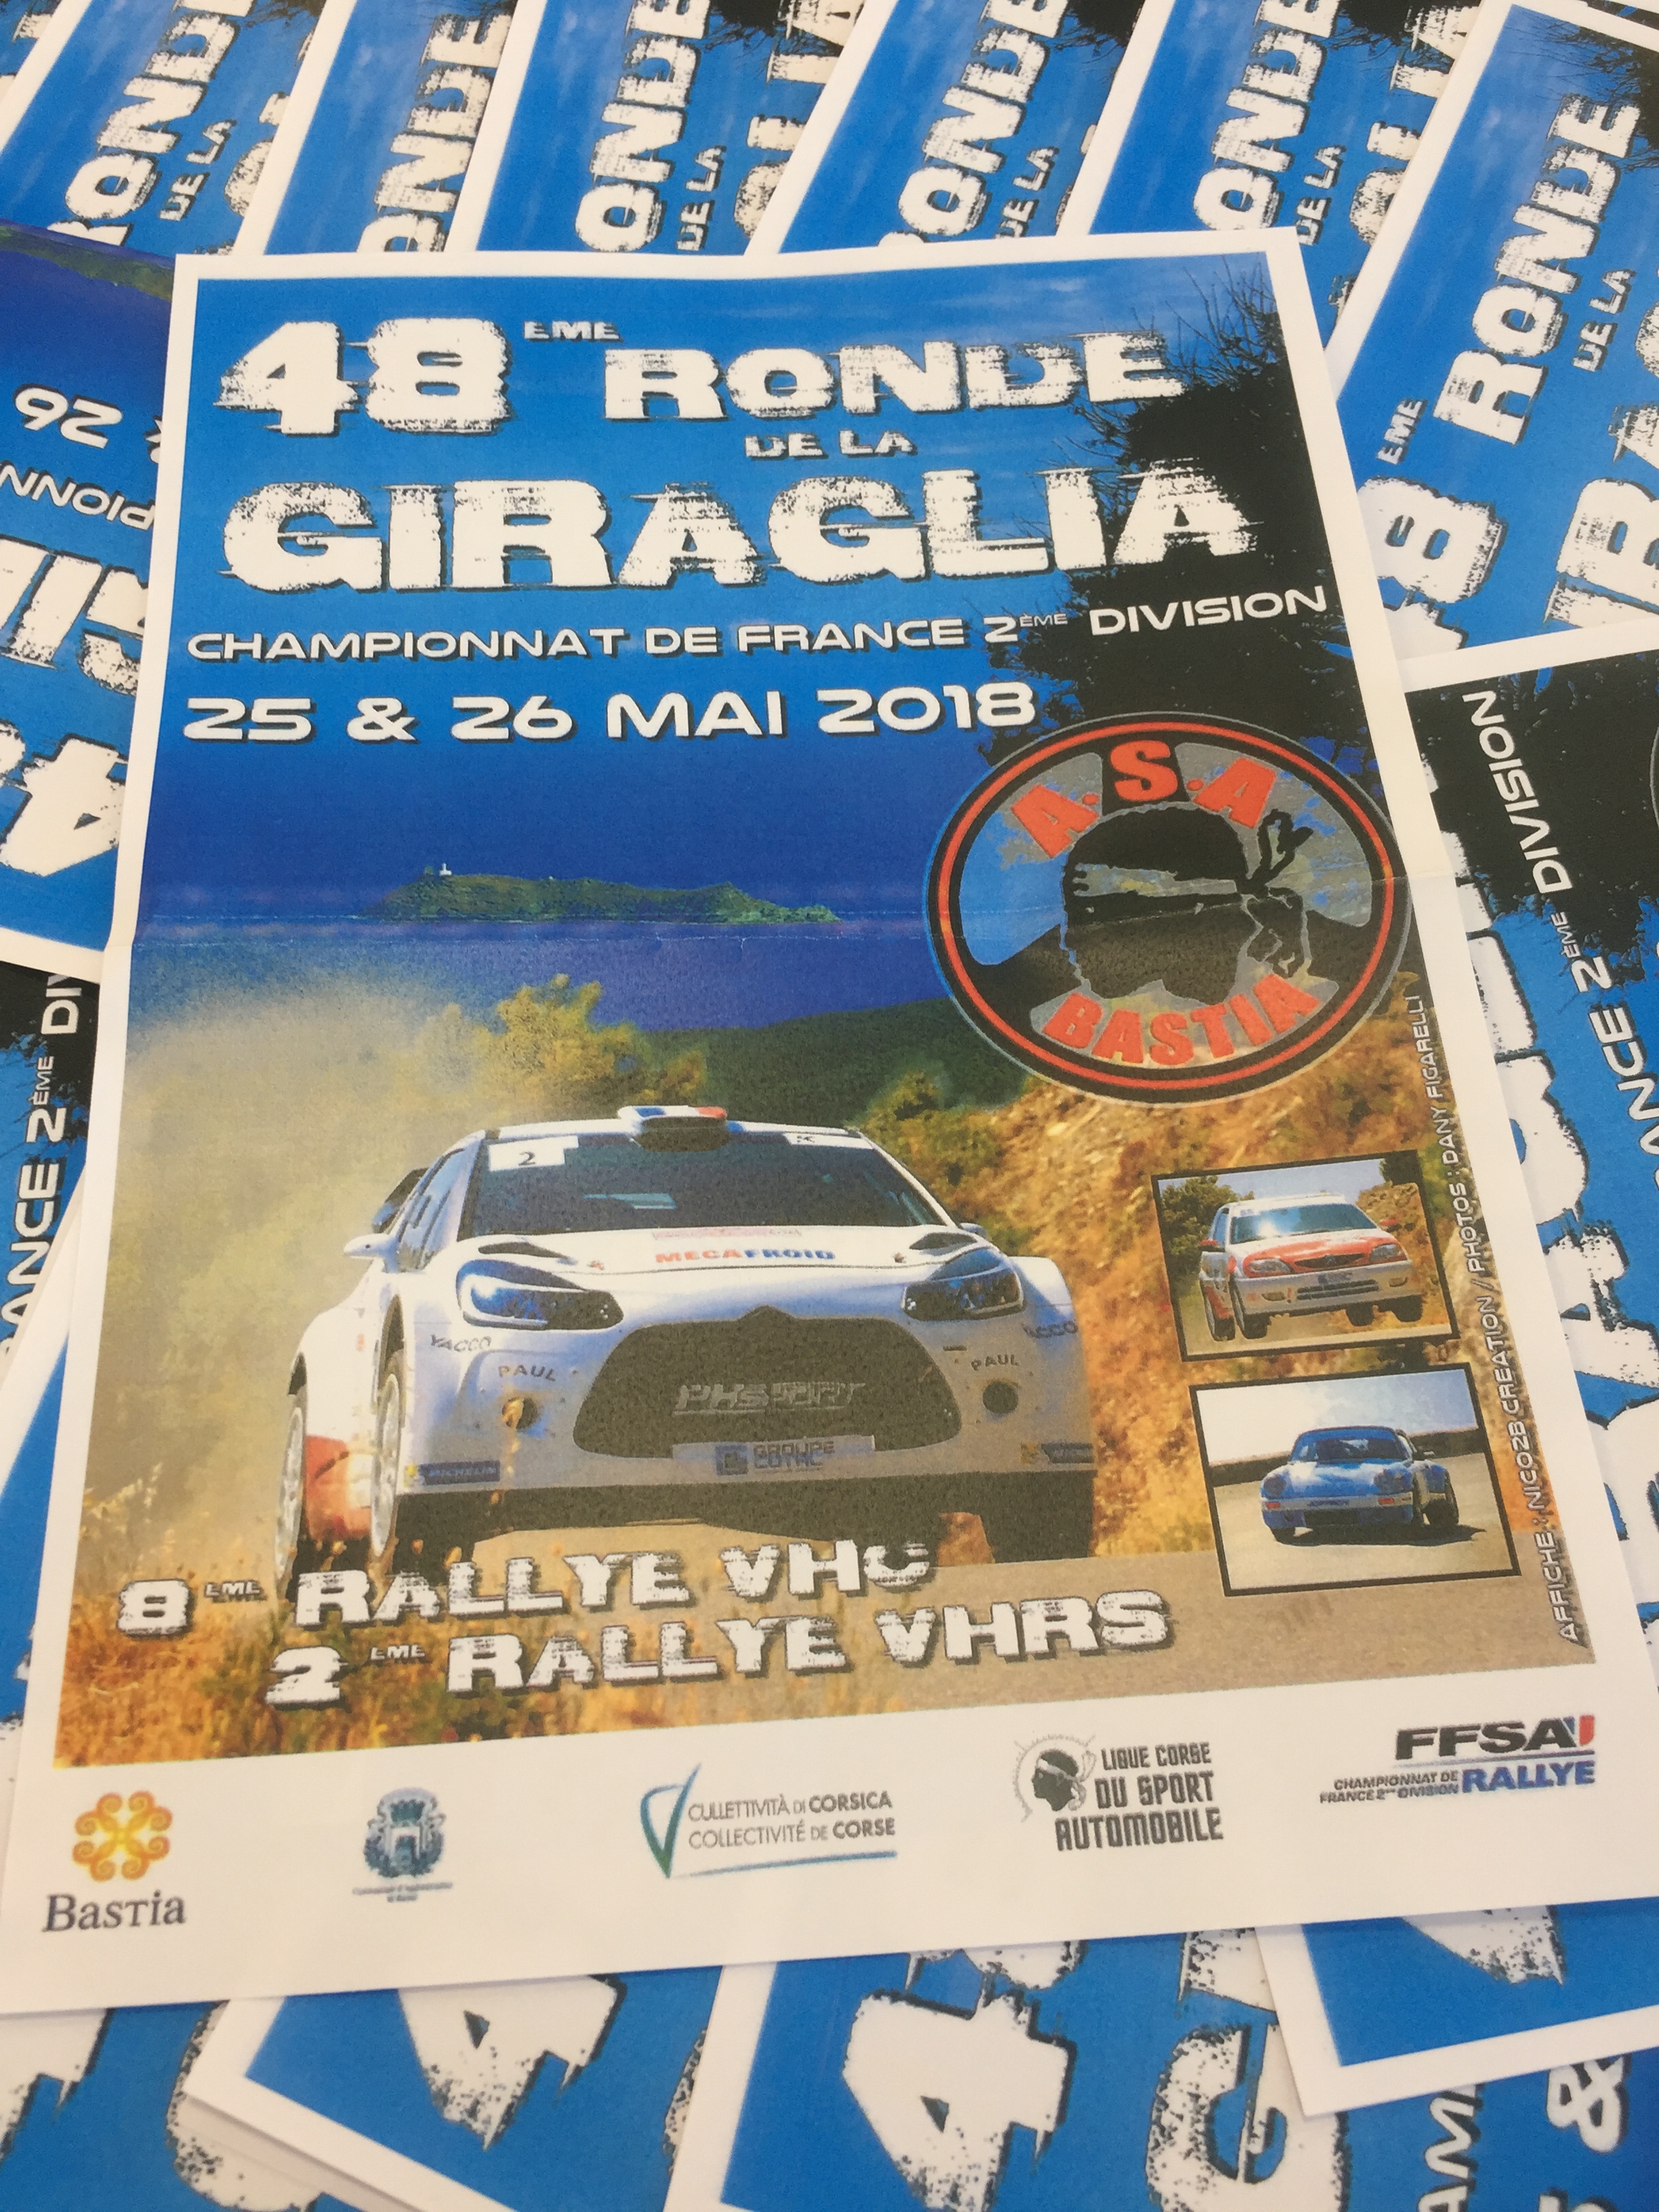 Automobile : La 48ème Ronde de la Giraglia approche